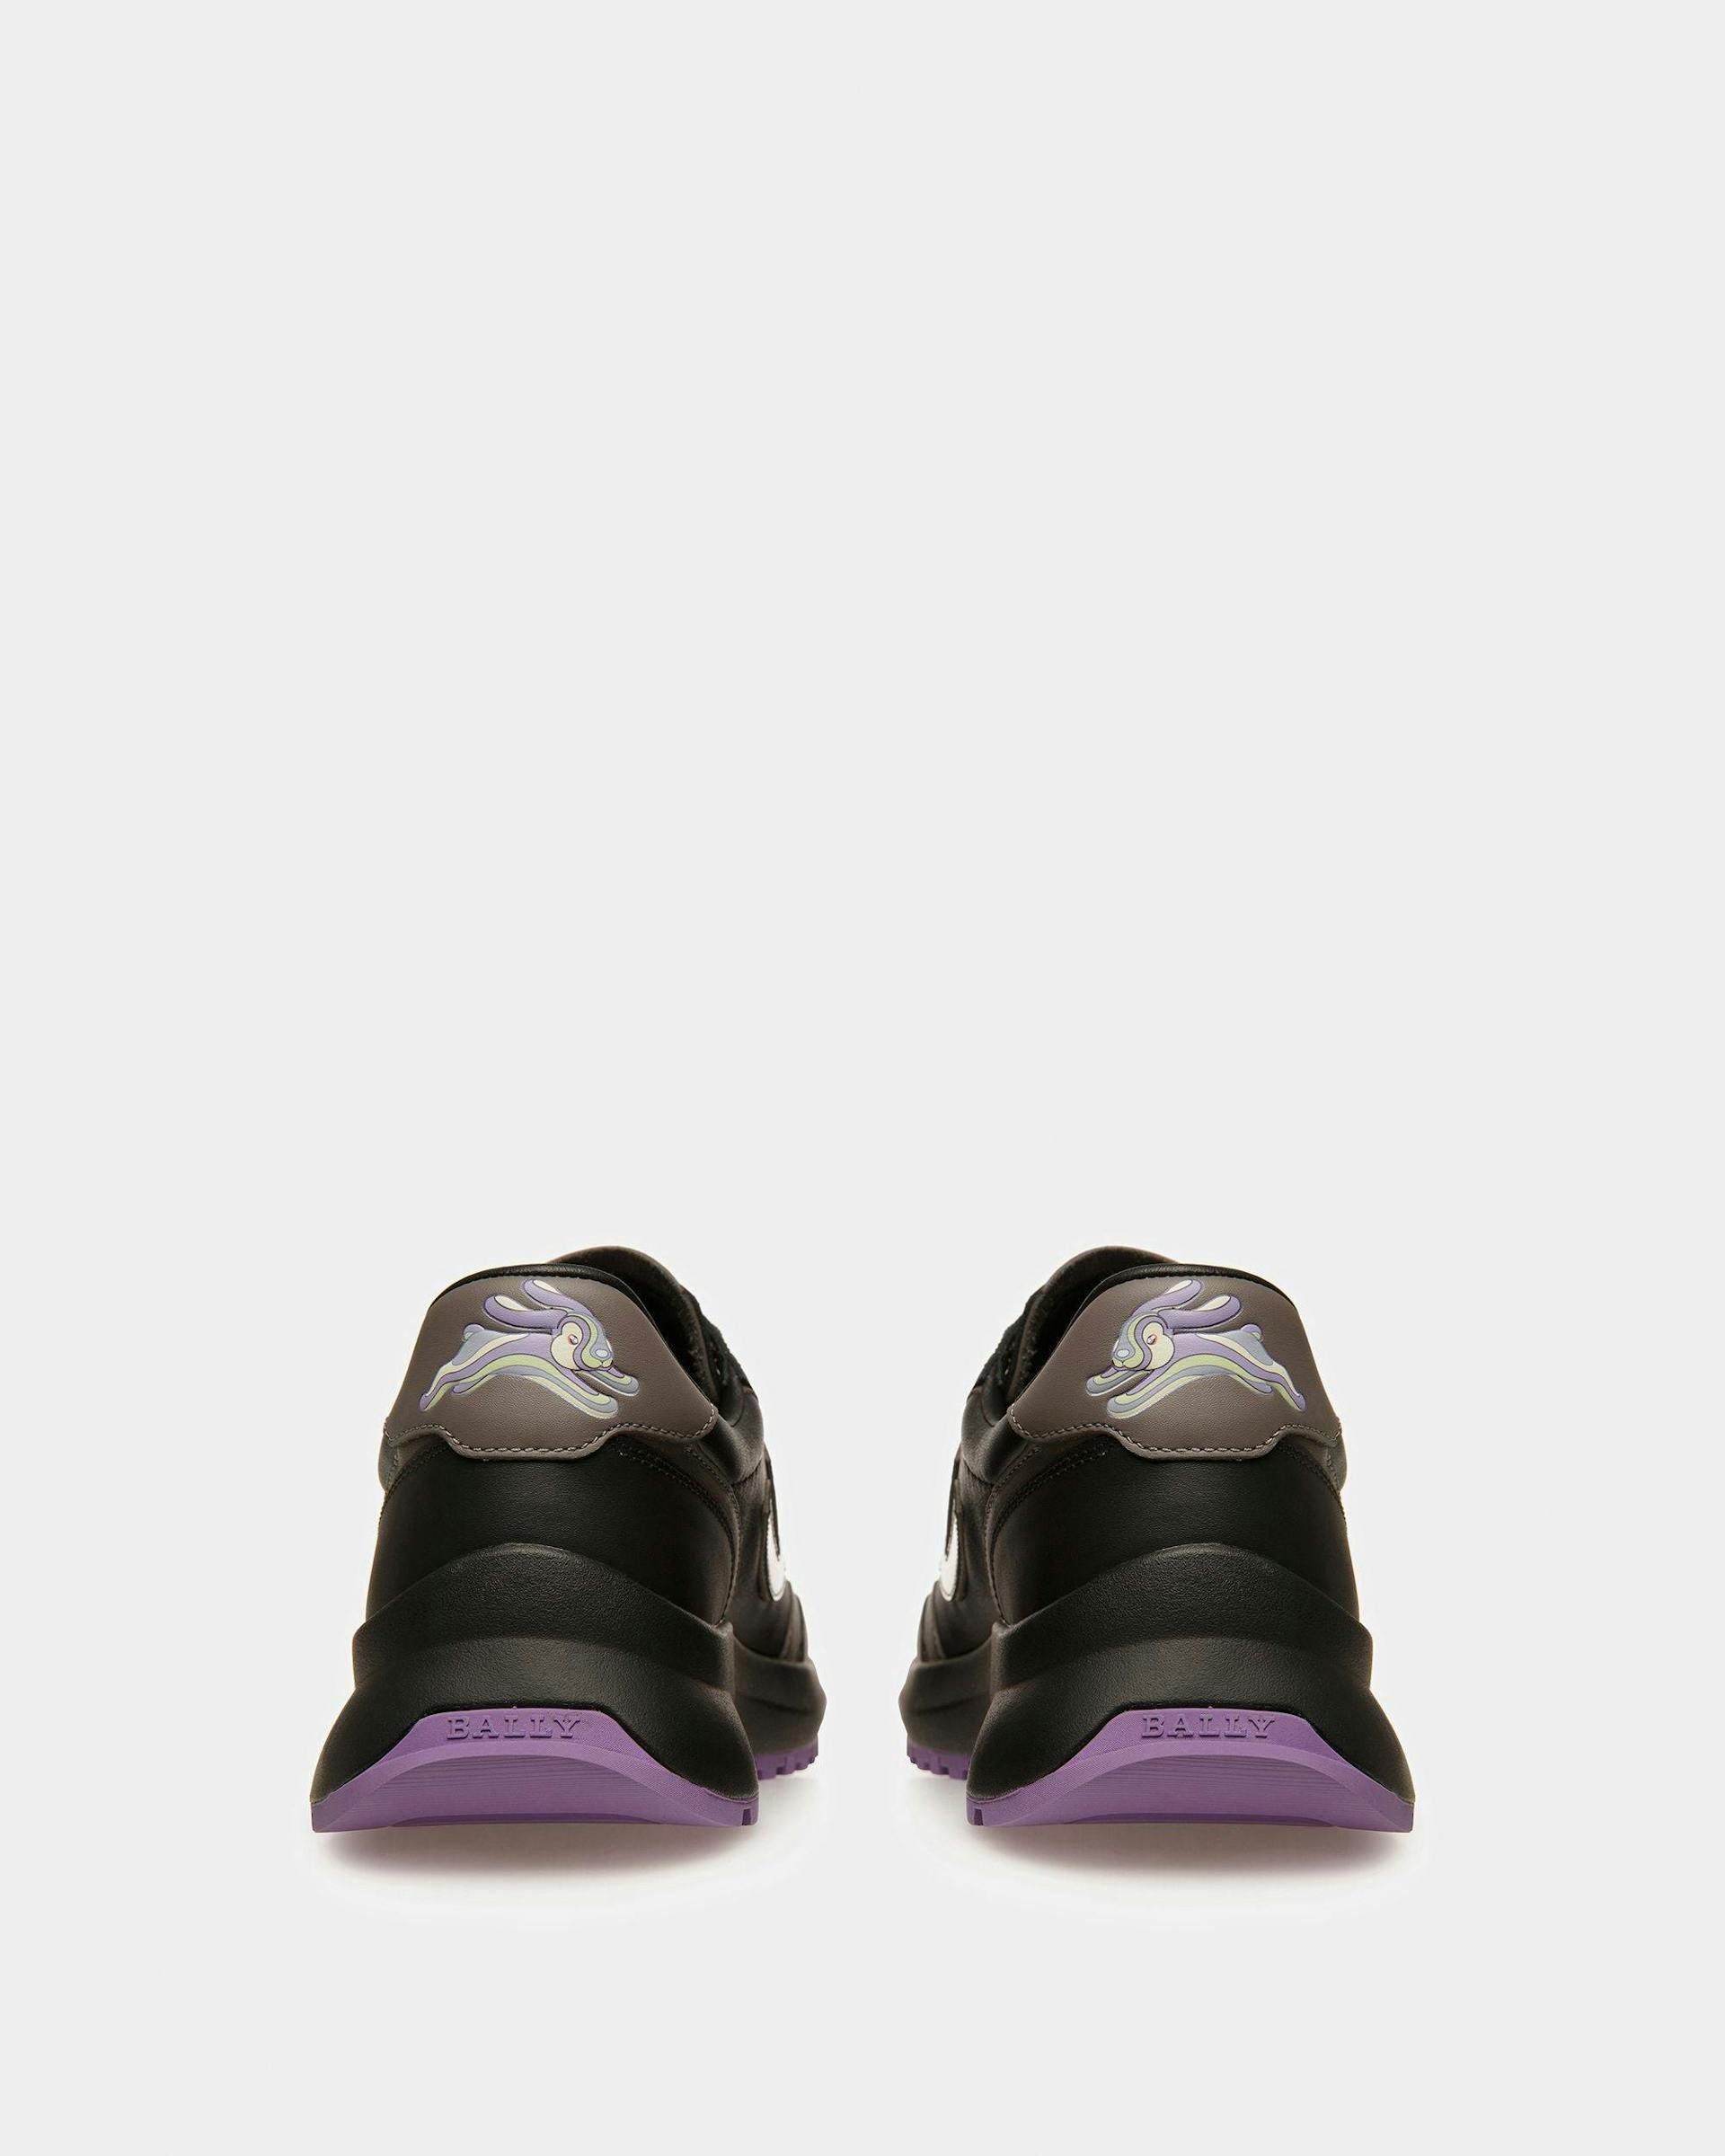 Demmy Sneaker In Pelle Nera E Antracite - Uomo - Bally - 04